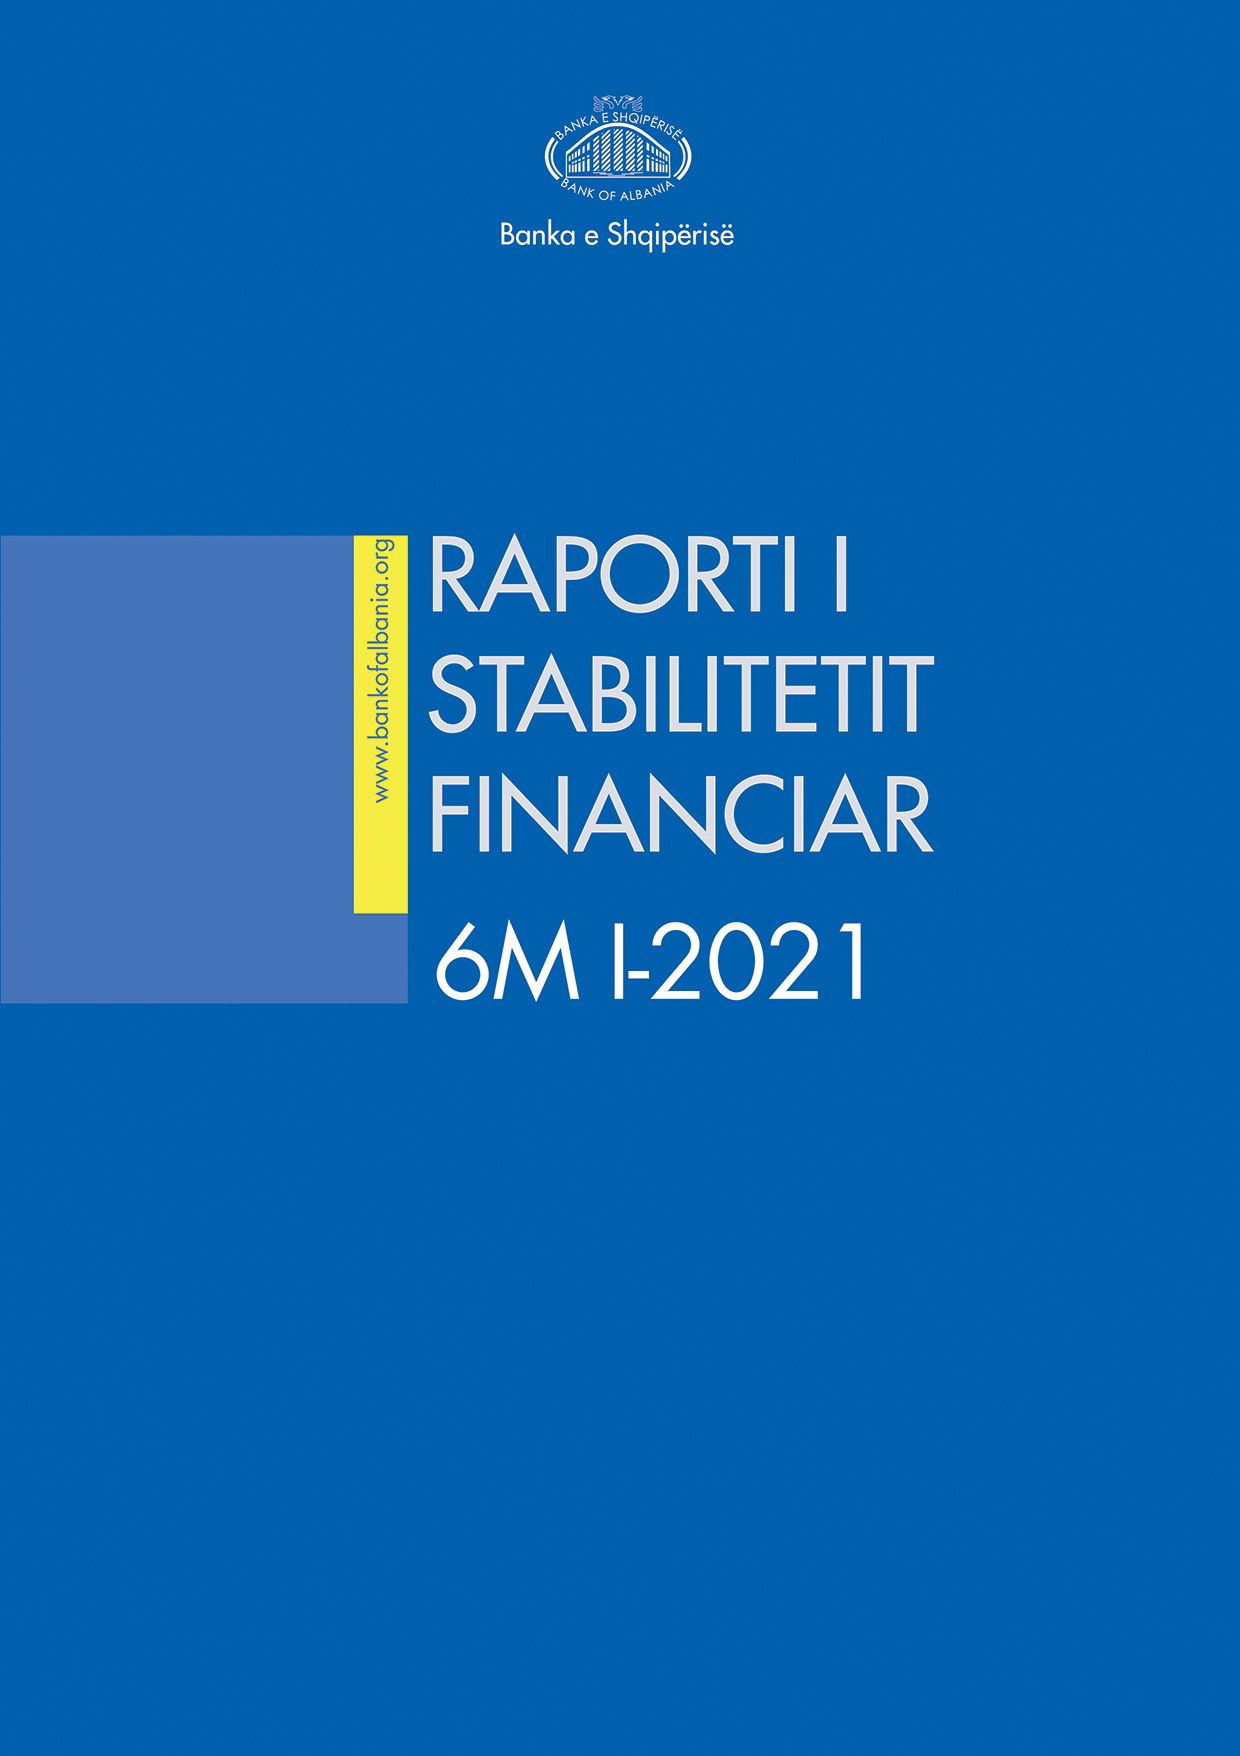 Raporti i Stabilitetit Financiar për gjashtëmujorin e parë të vitit 2021